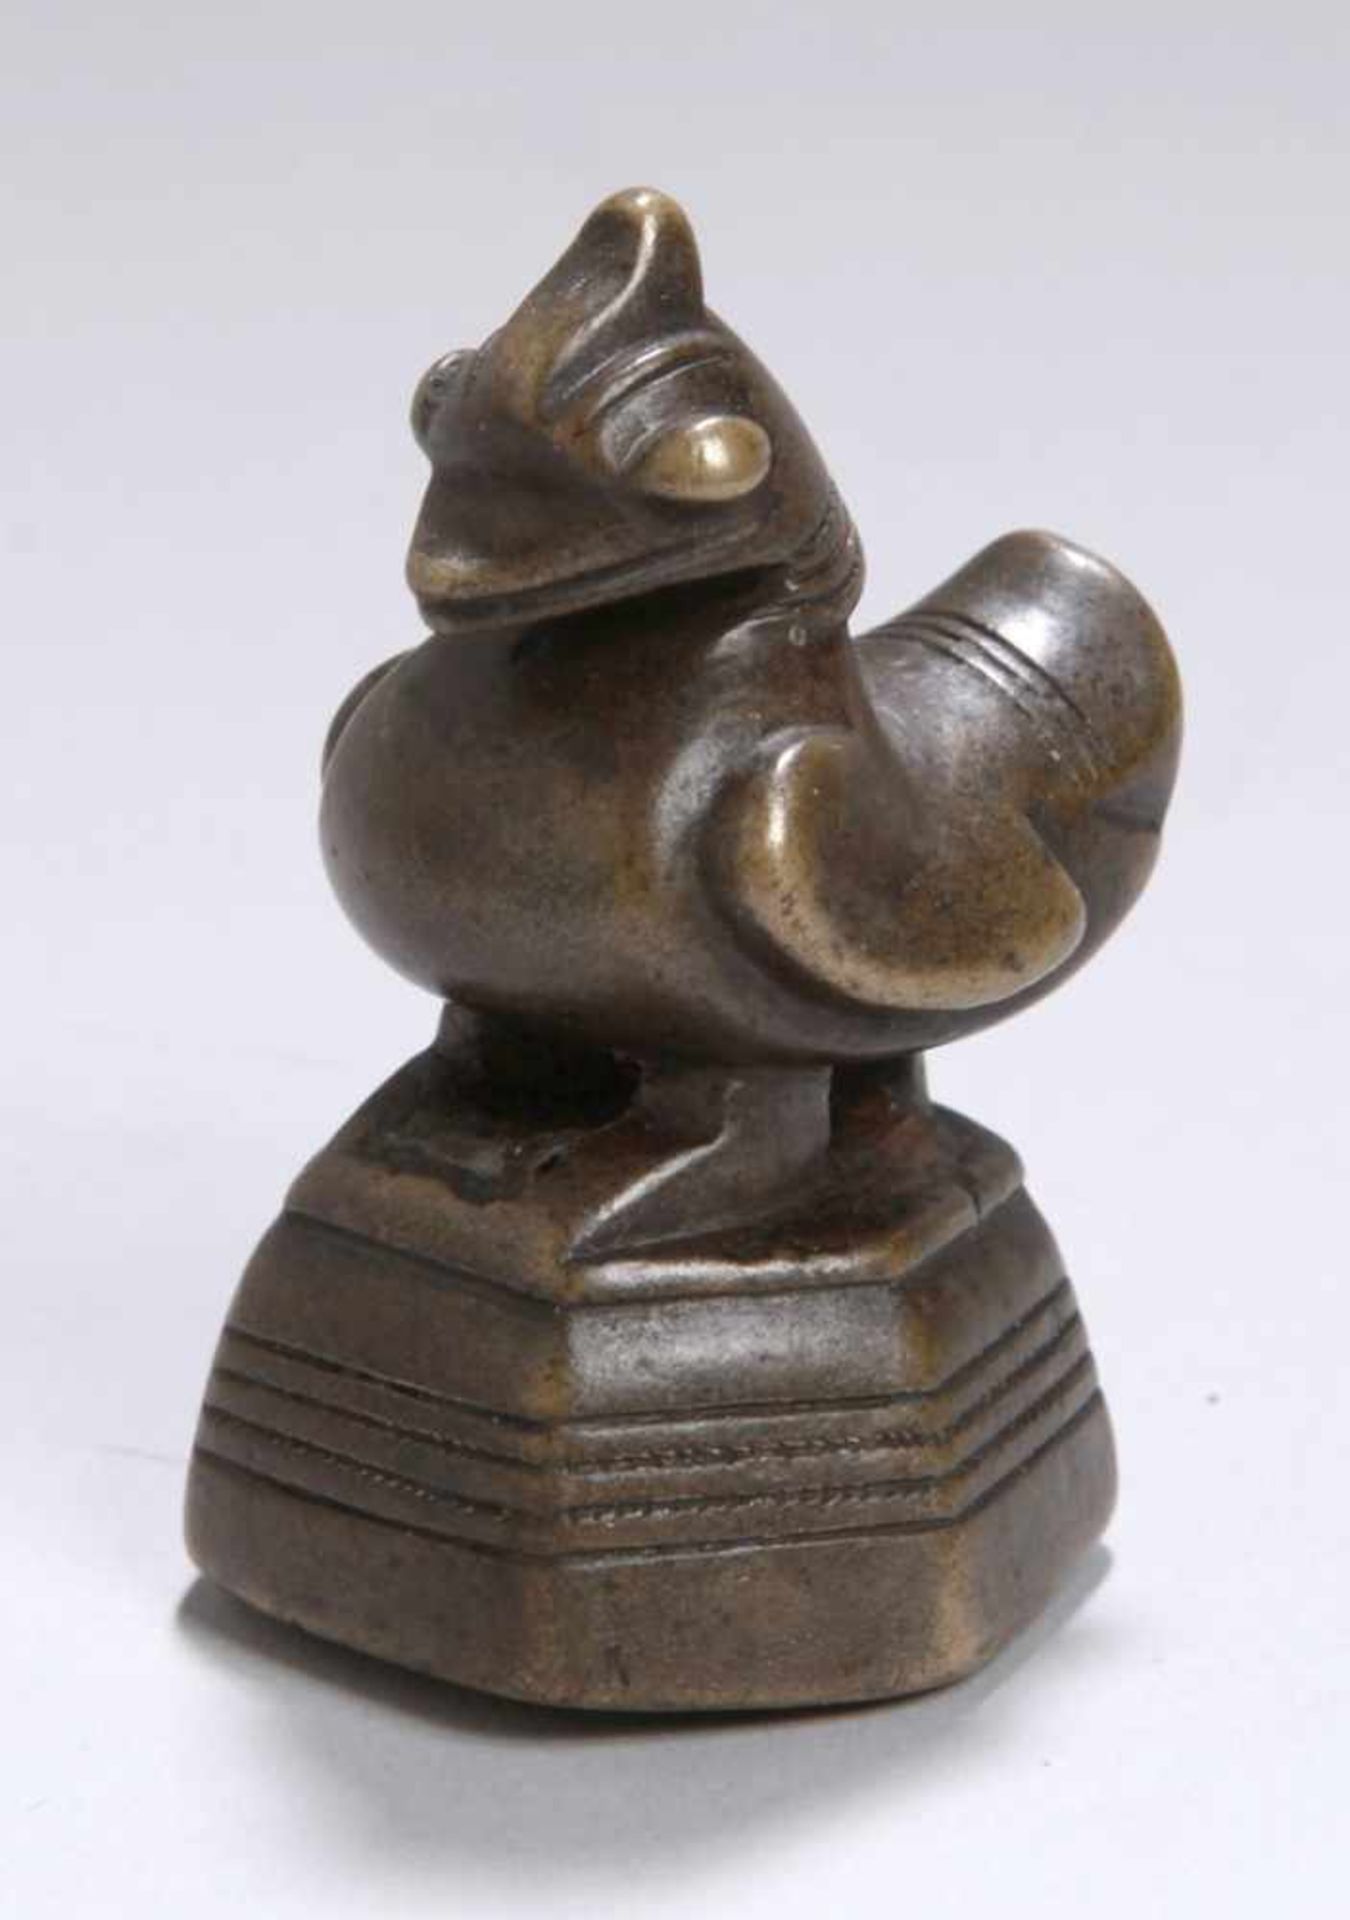 Bronze-Opiumgewicht, Burma, 19. Jh., gearbeitet in Form von Ente auf Sockel, dunkleAlterspatina, H 5